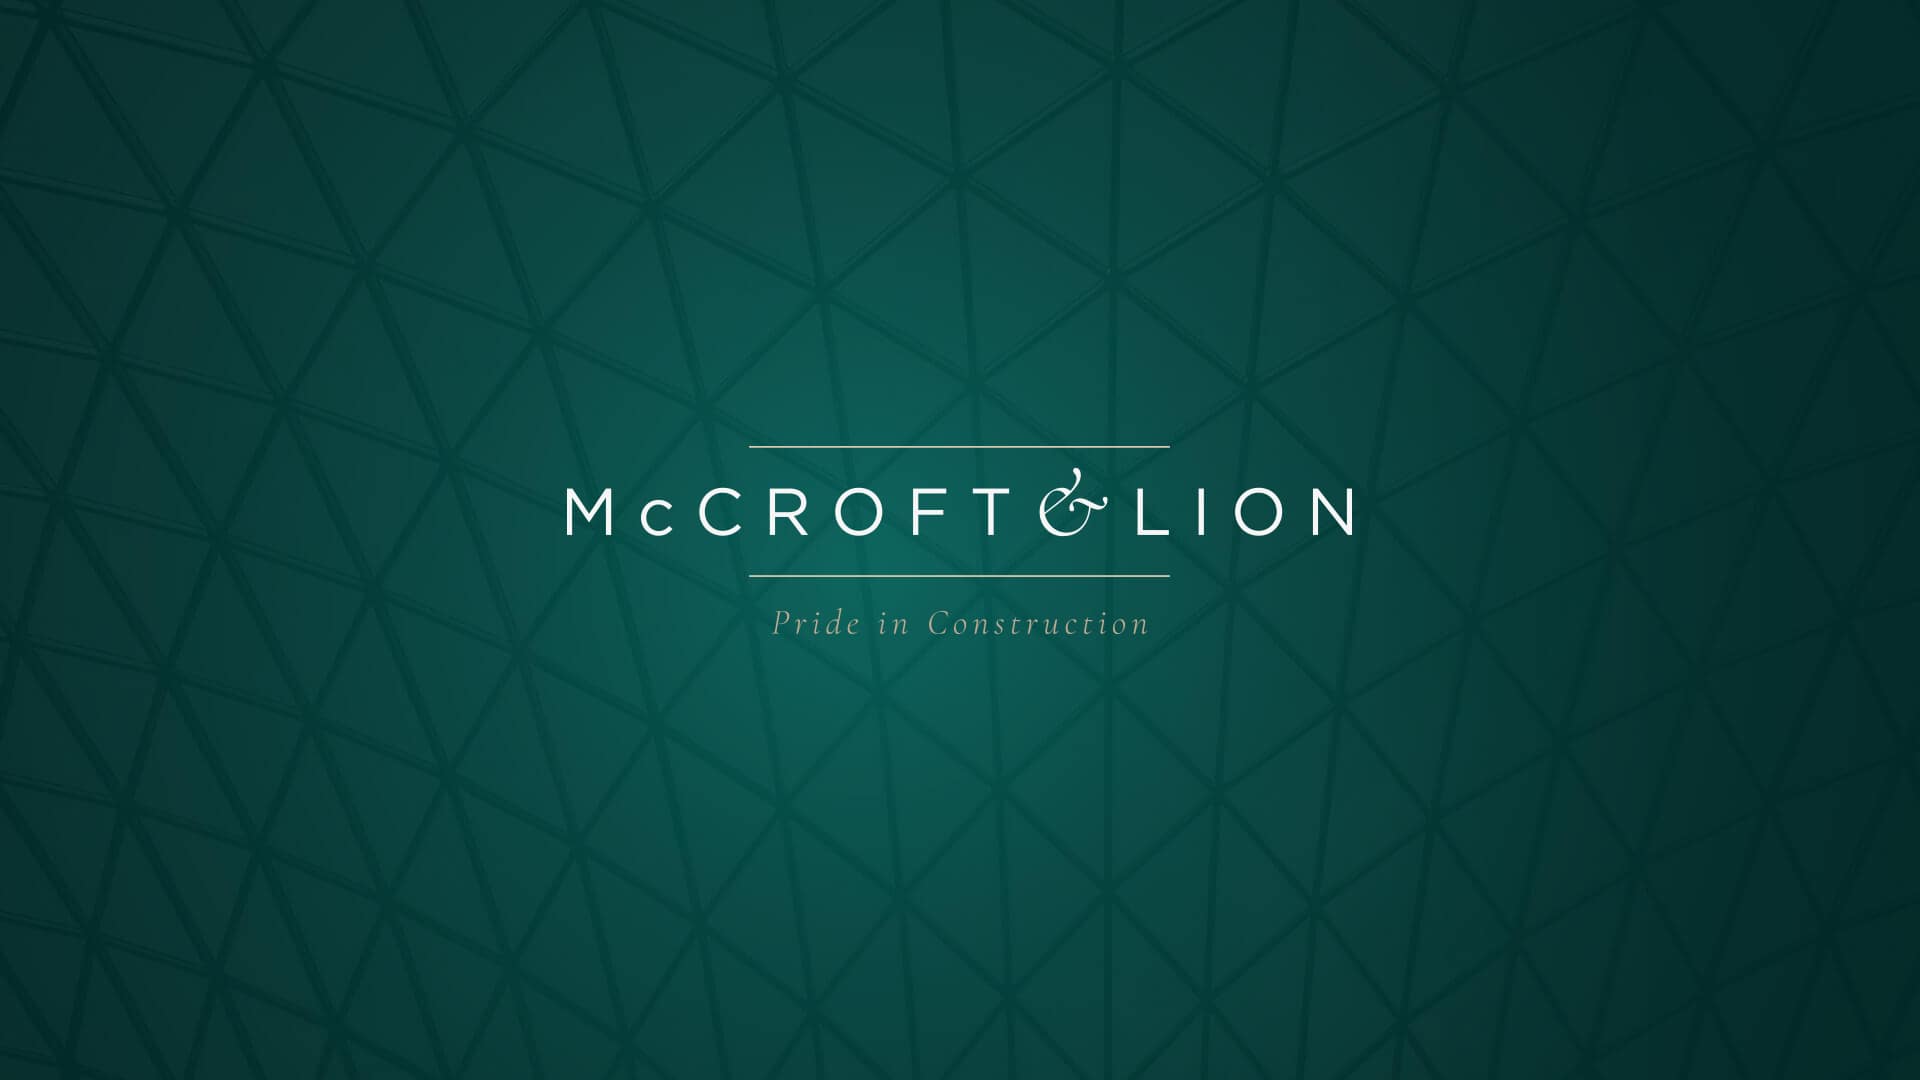 McCroft & Lion